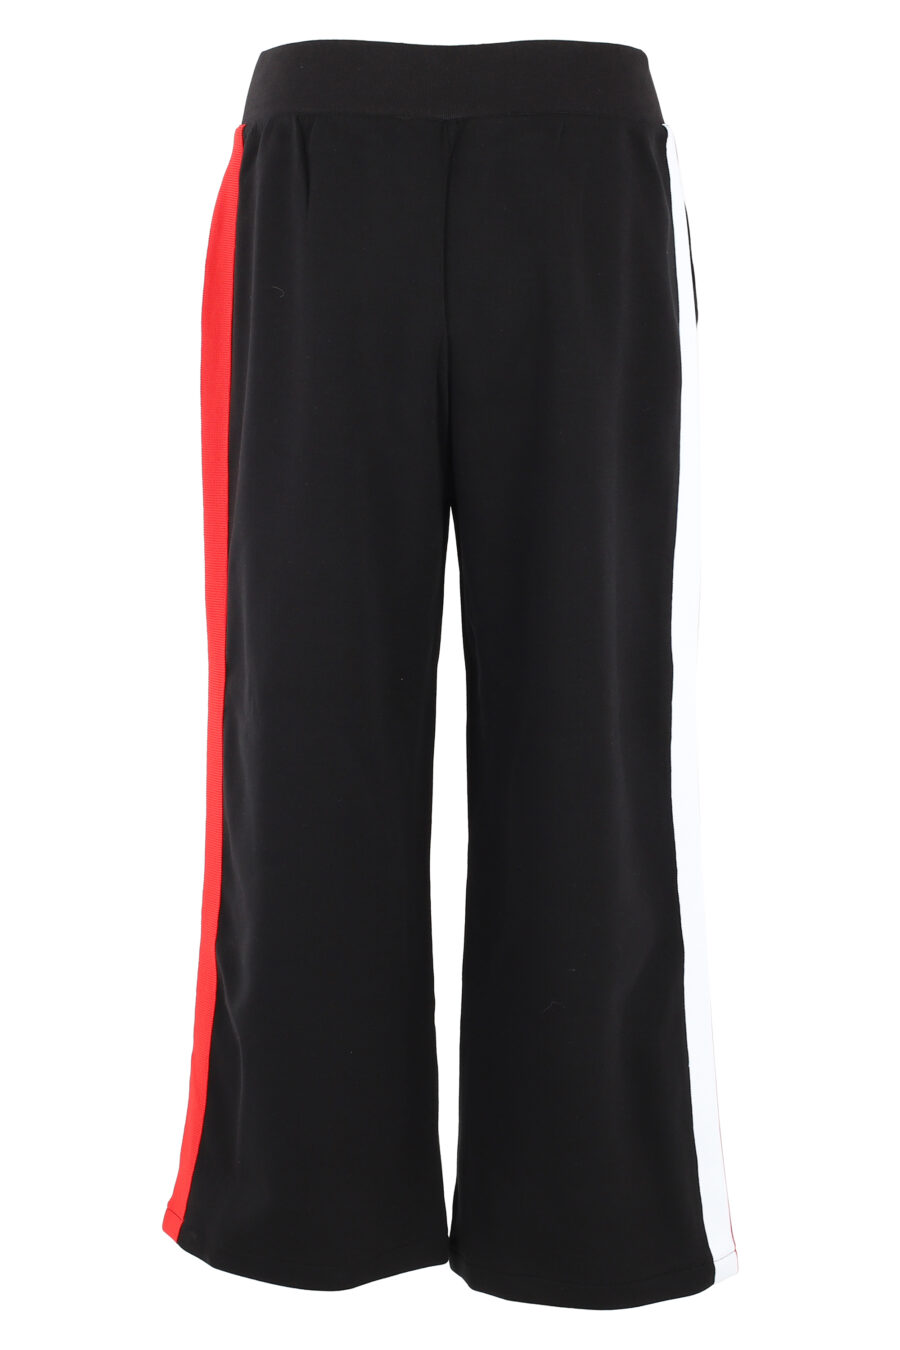 Pantalón de chándal negro con lineas multicolor lateral - IMG 5053